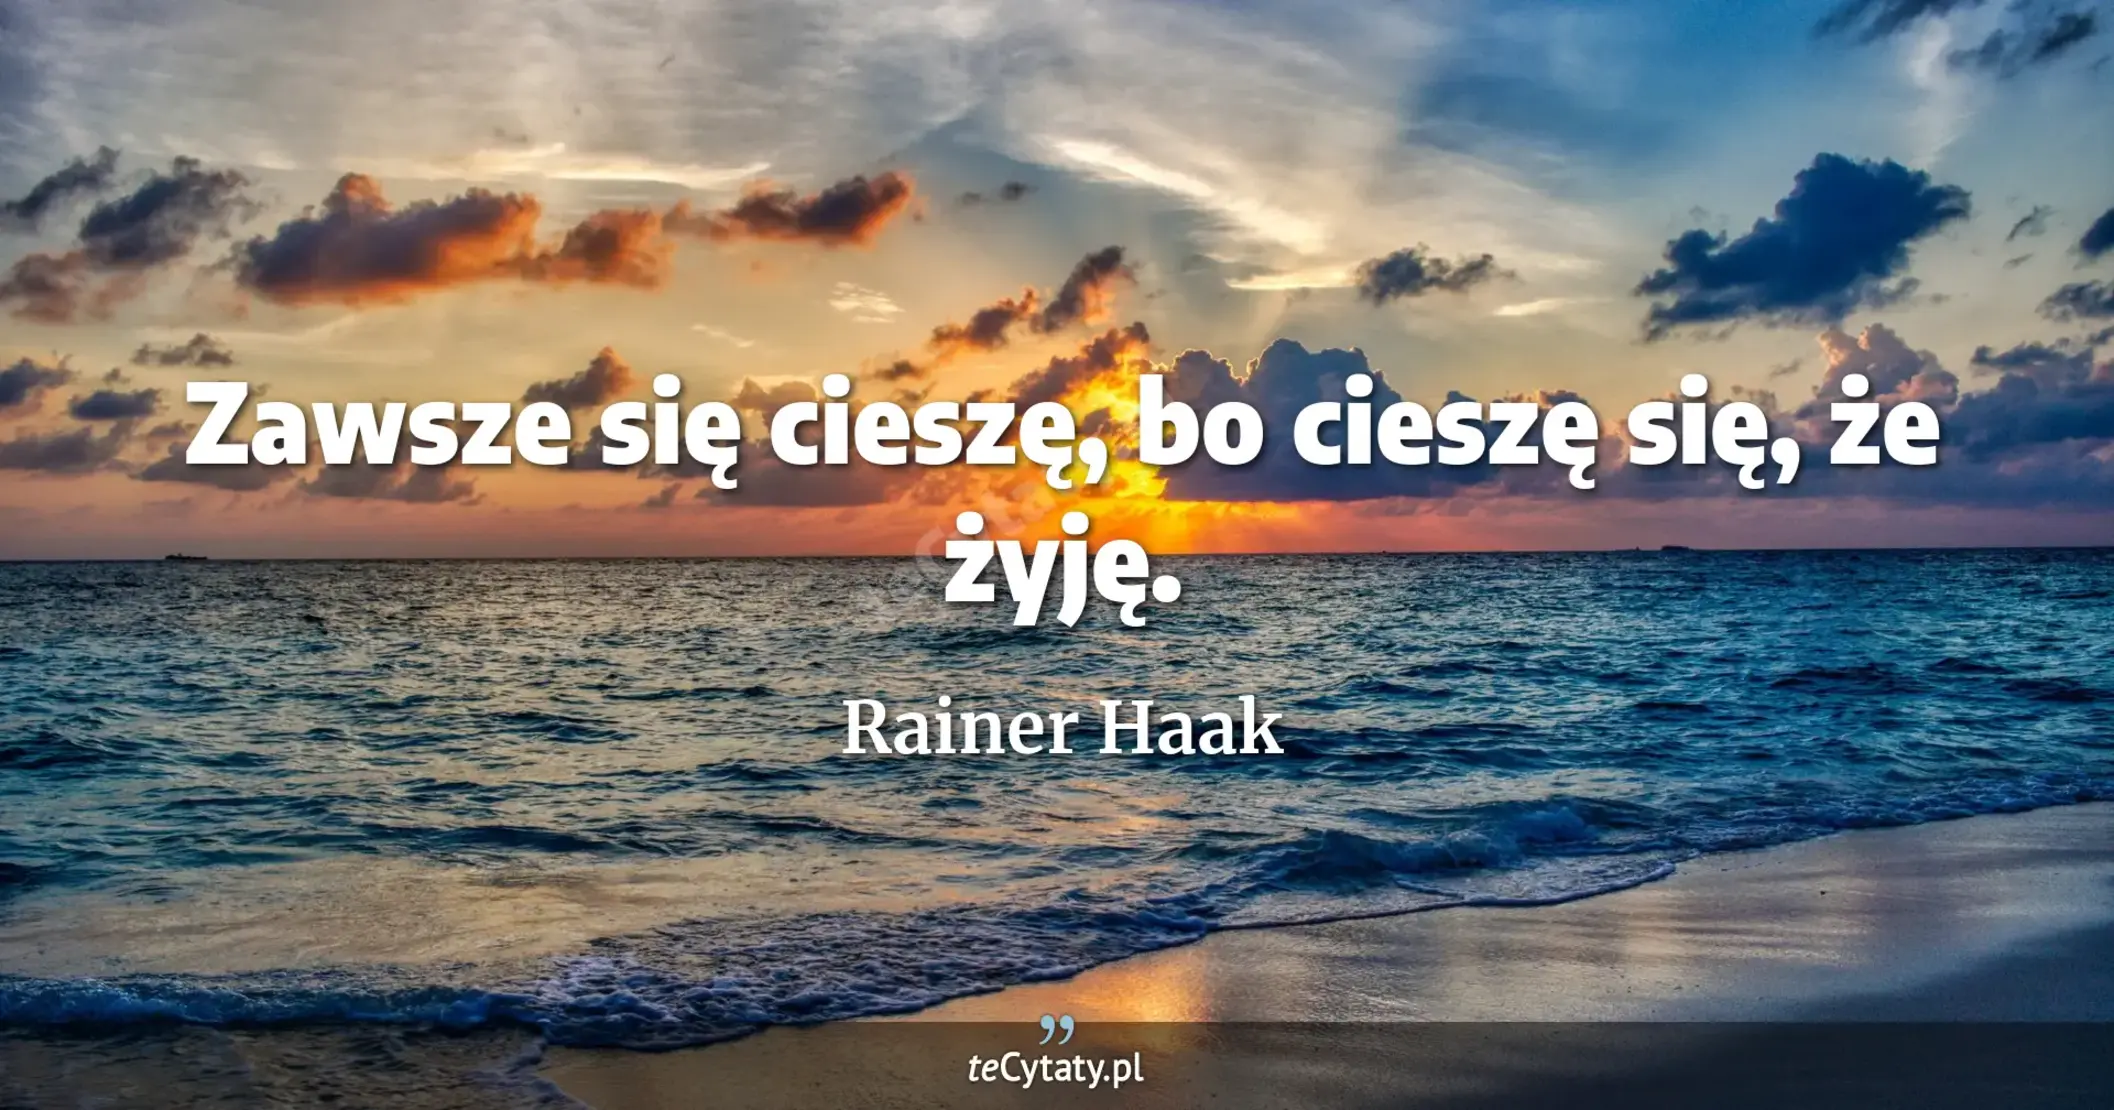 Zawsze się cieszę, bo cieszę się, że żyję. - Rainer Haak